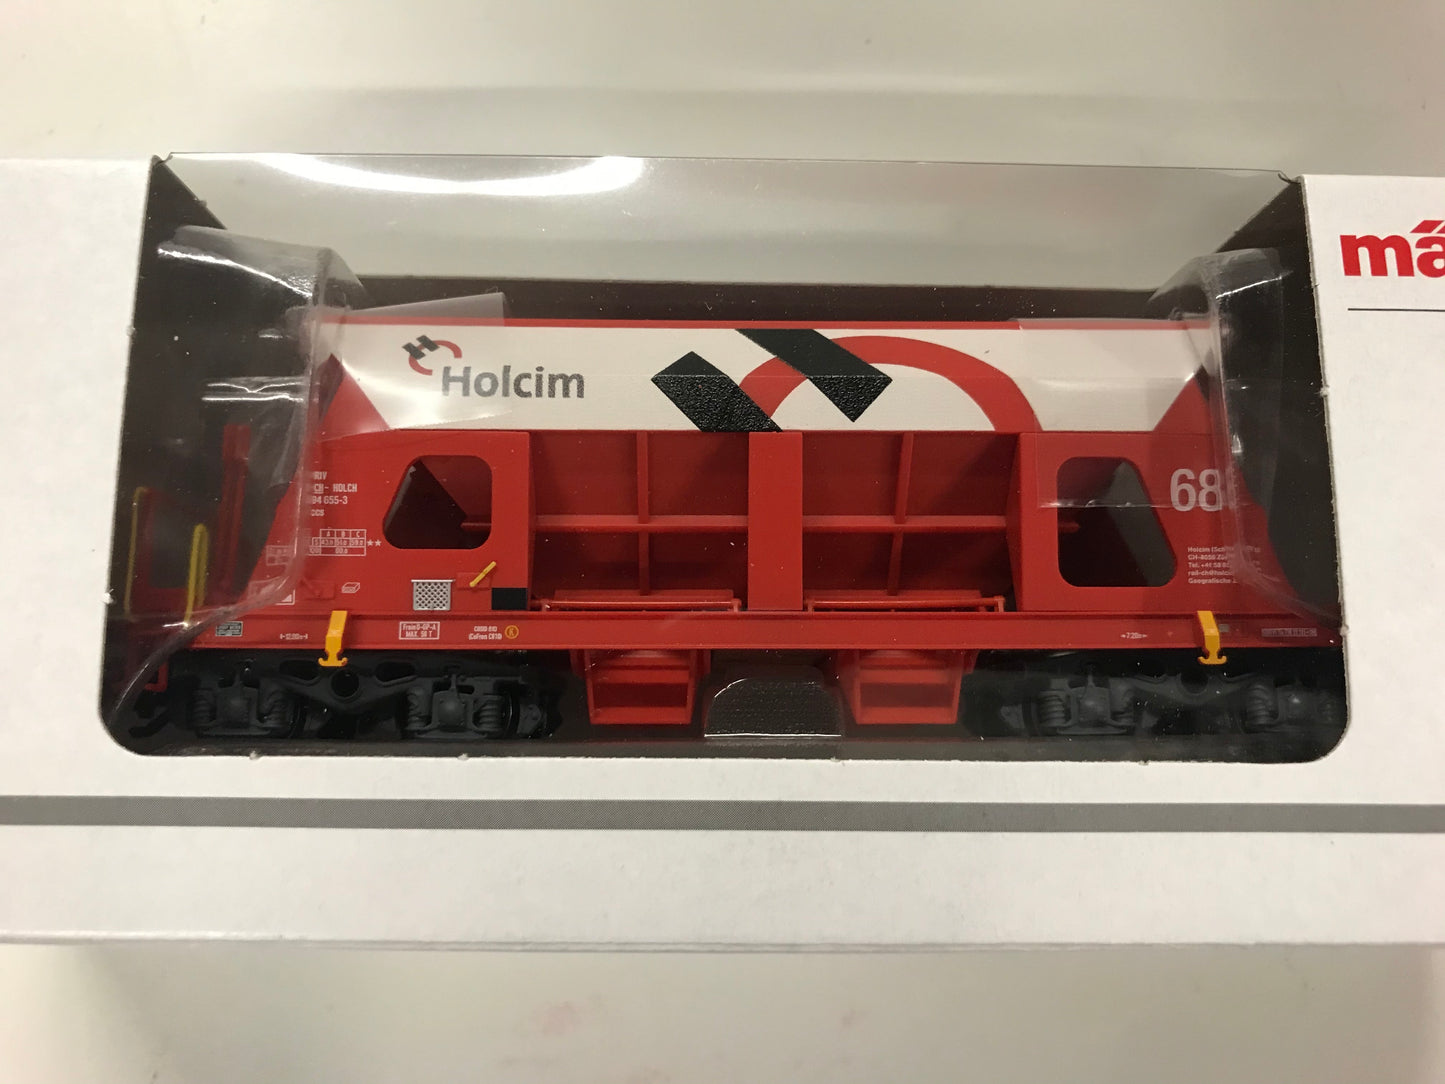 Marklin 46333 - Holcim Hopper Car Set